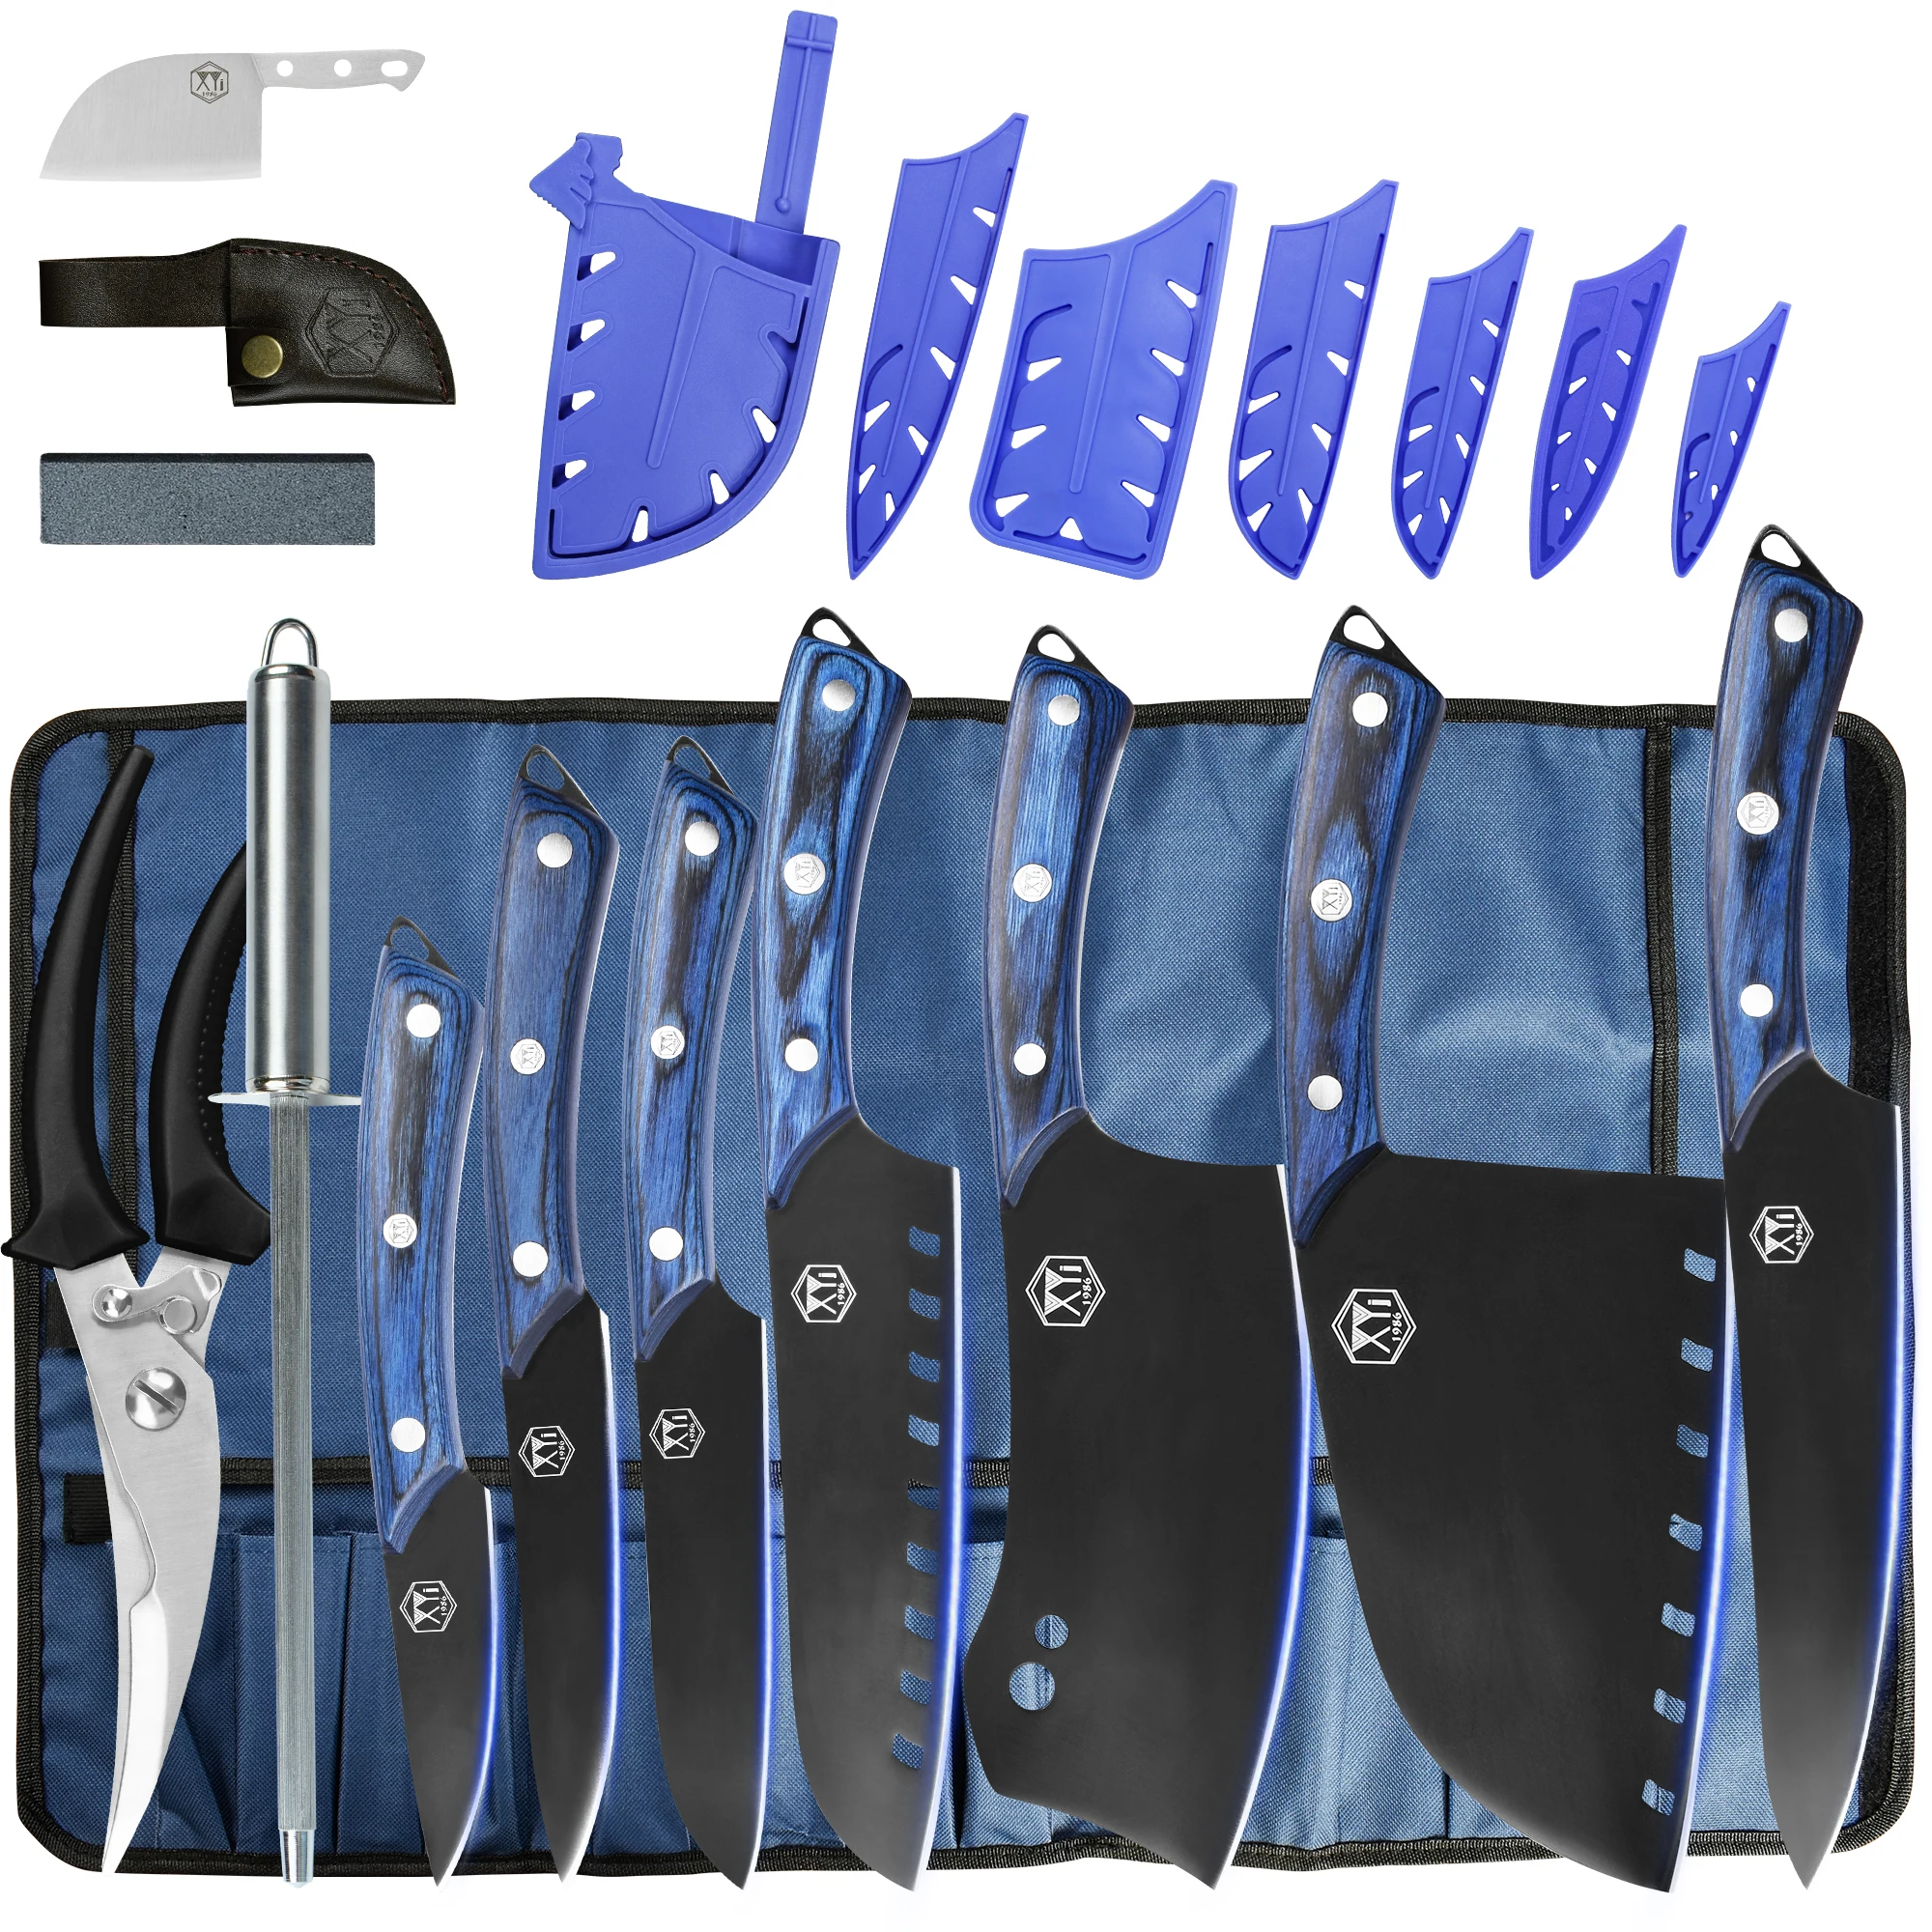 

Набор кухонных ножей XYj, набор из 7 предметов из нержавеющей стали, синие мясорезки мясника, шеф-повара, с чехлом для рулонных пакетов и ножниц